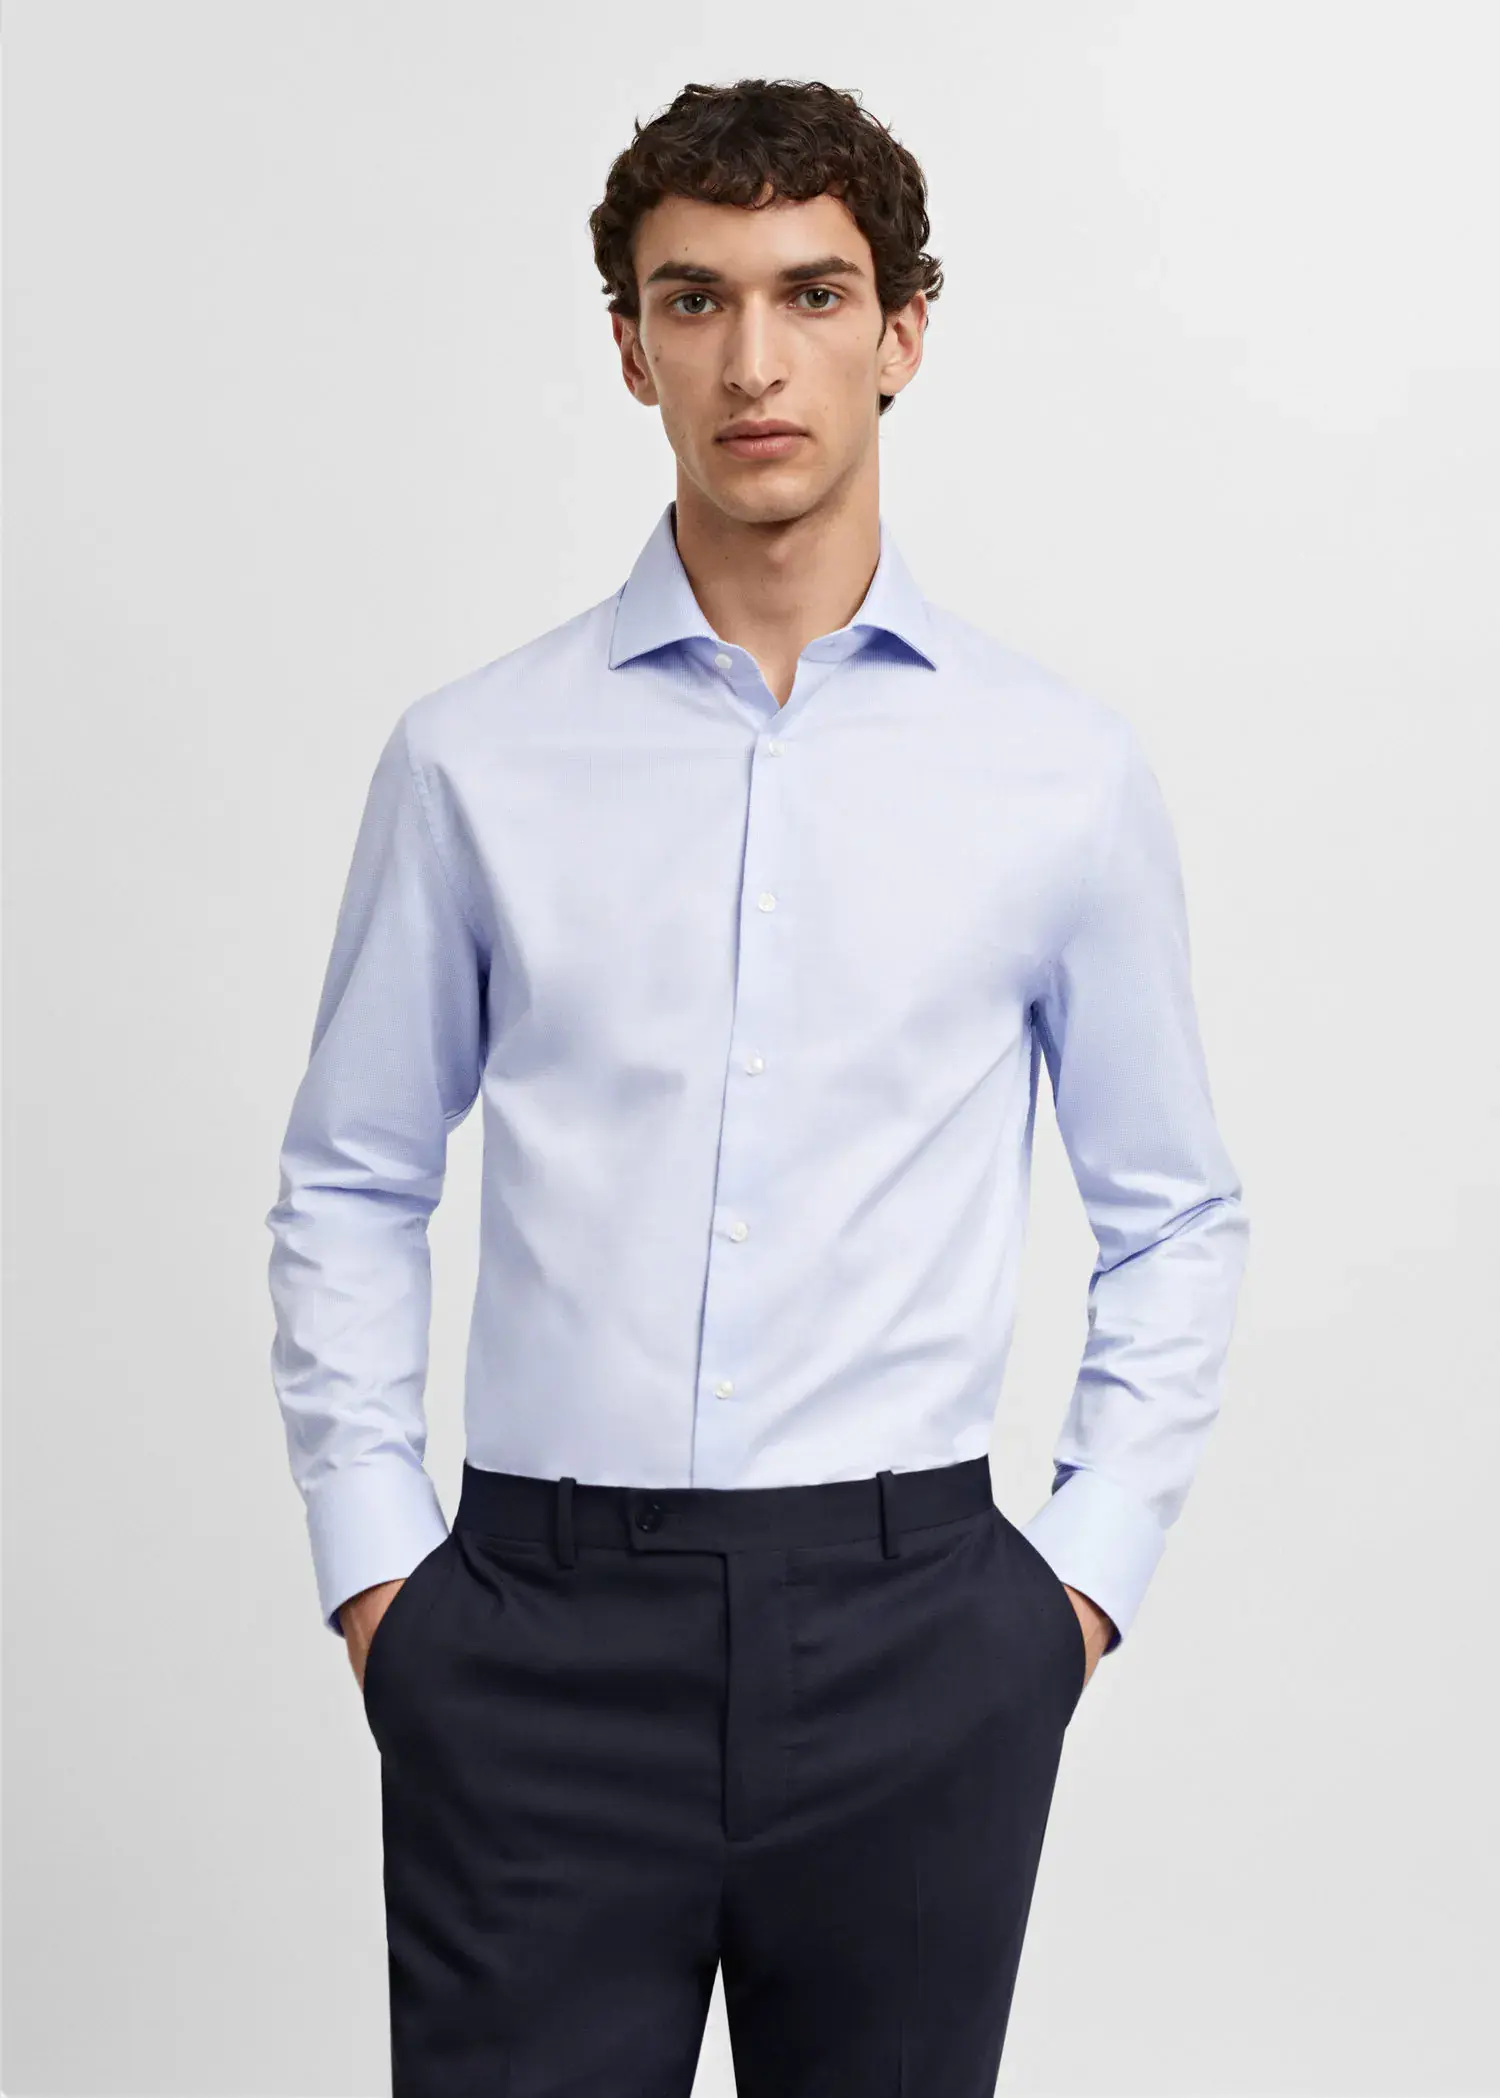 Mango Slim fit structured suit shirt. 2